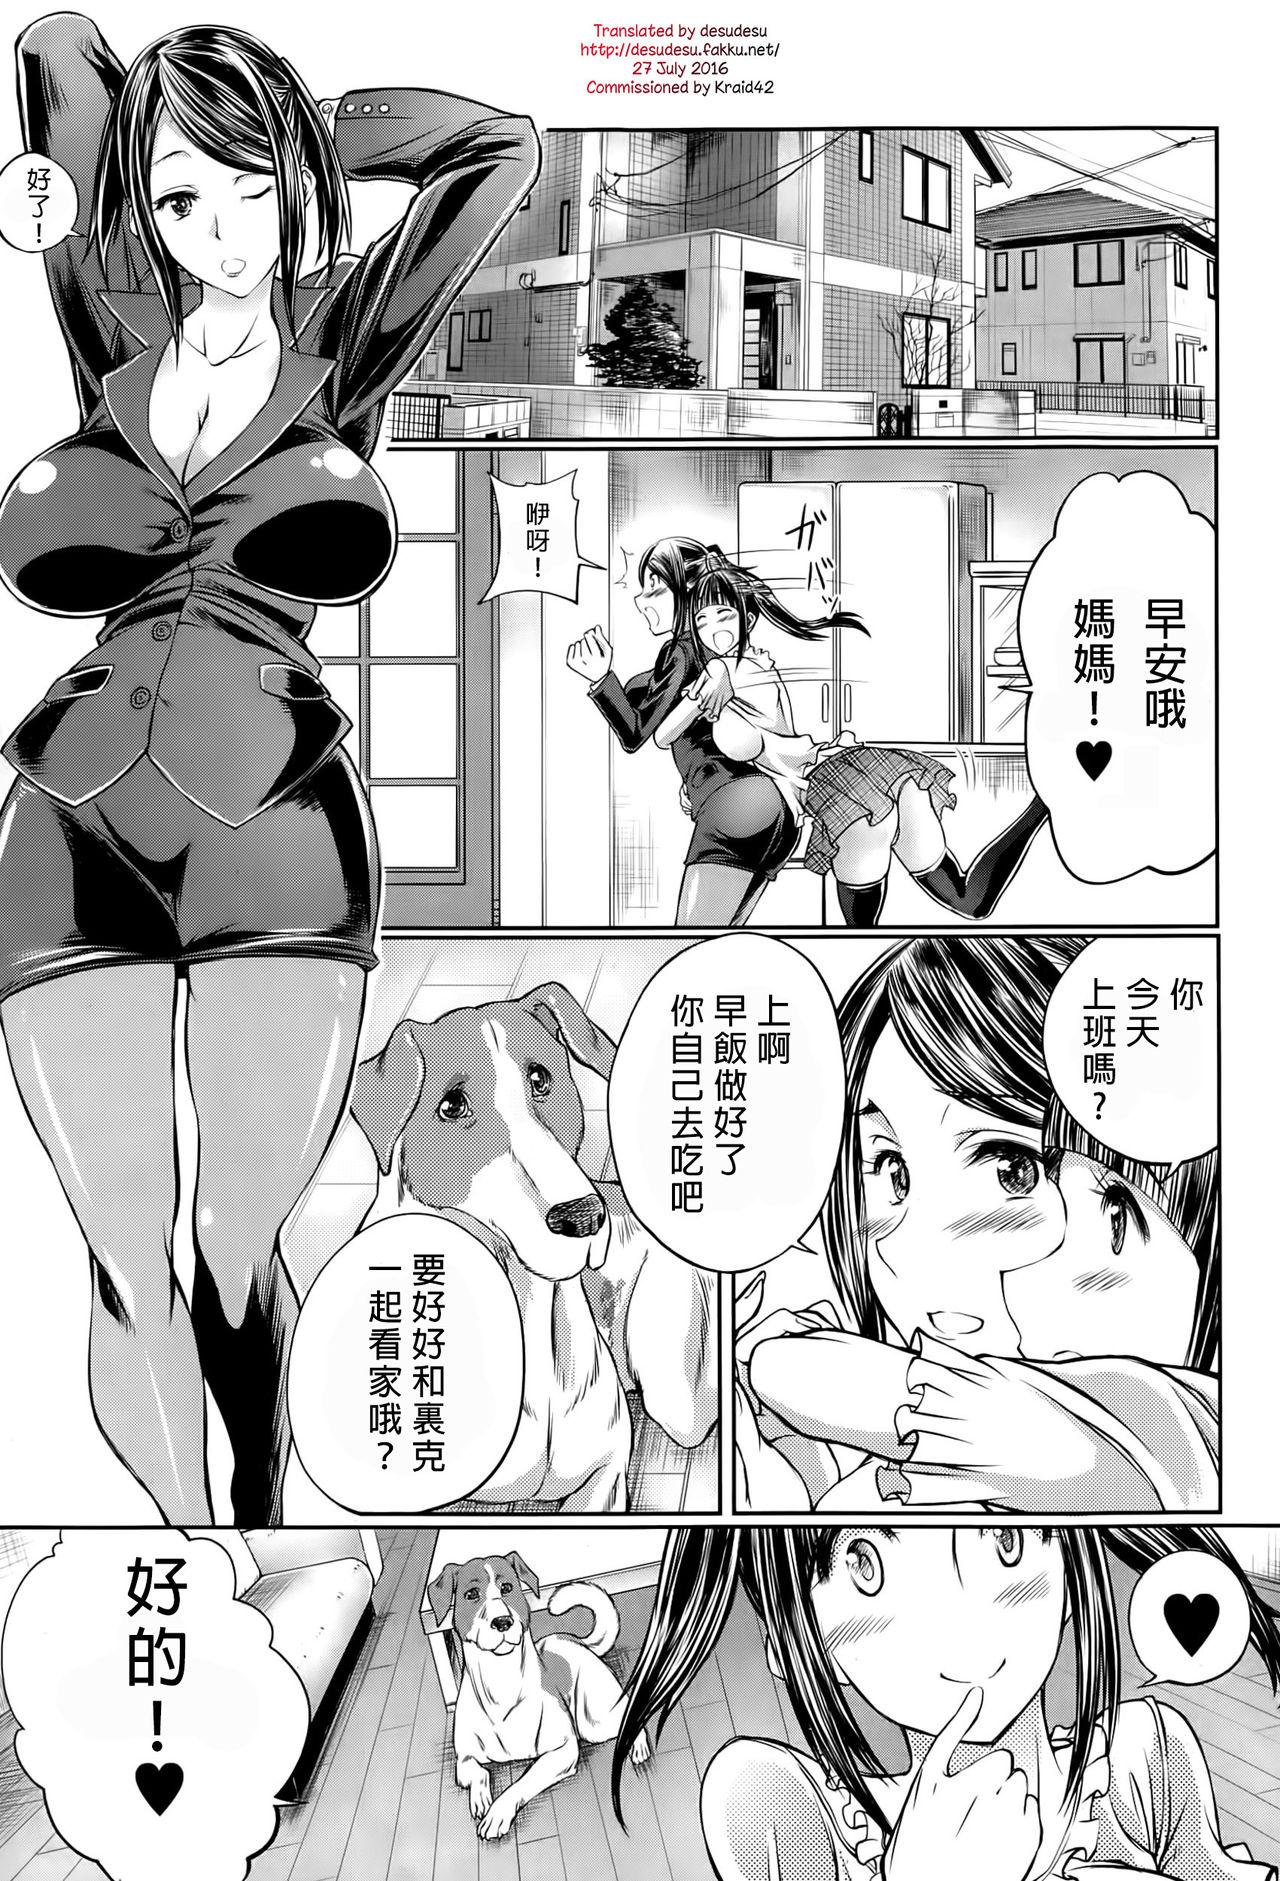 Analfuck Musume no Kareshi wa Wan-chan?! Okaasan Yurushimasen! | My Daughter's Boyfriend is a dog. As her mother, I won't allow it! Semen - Page 1